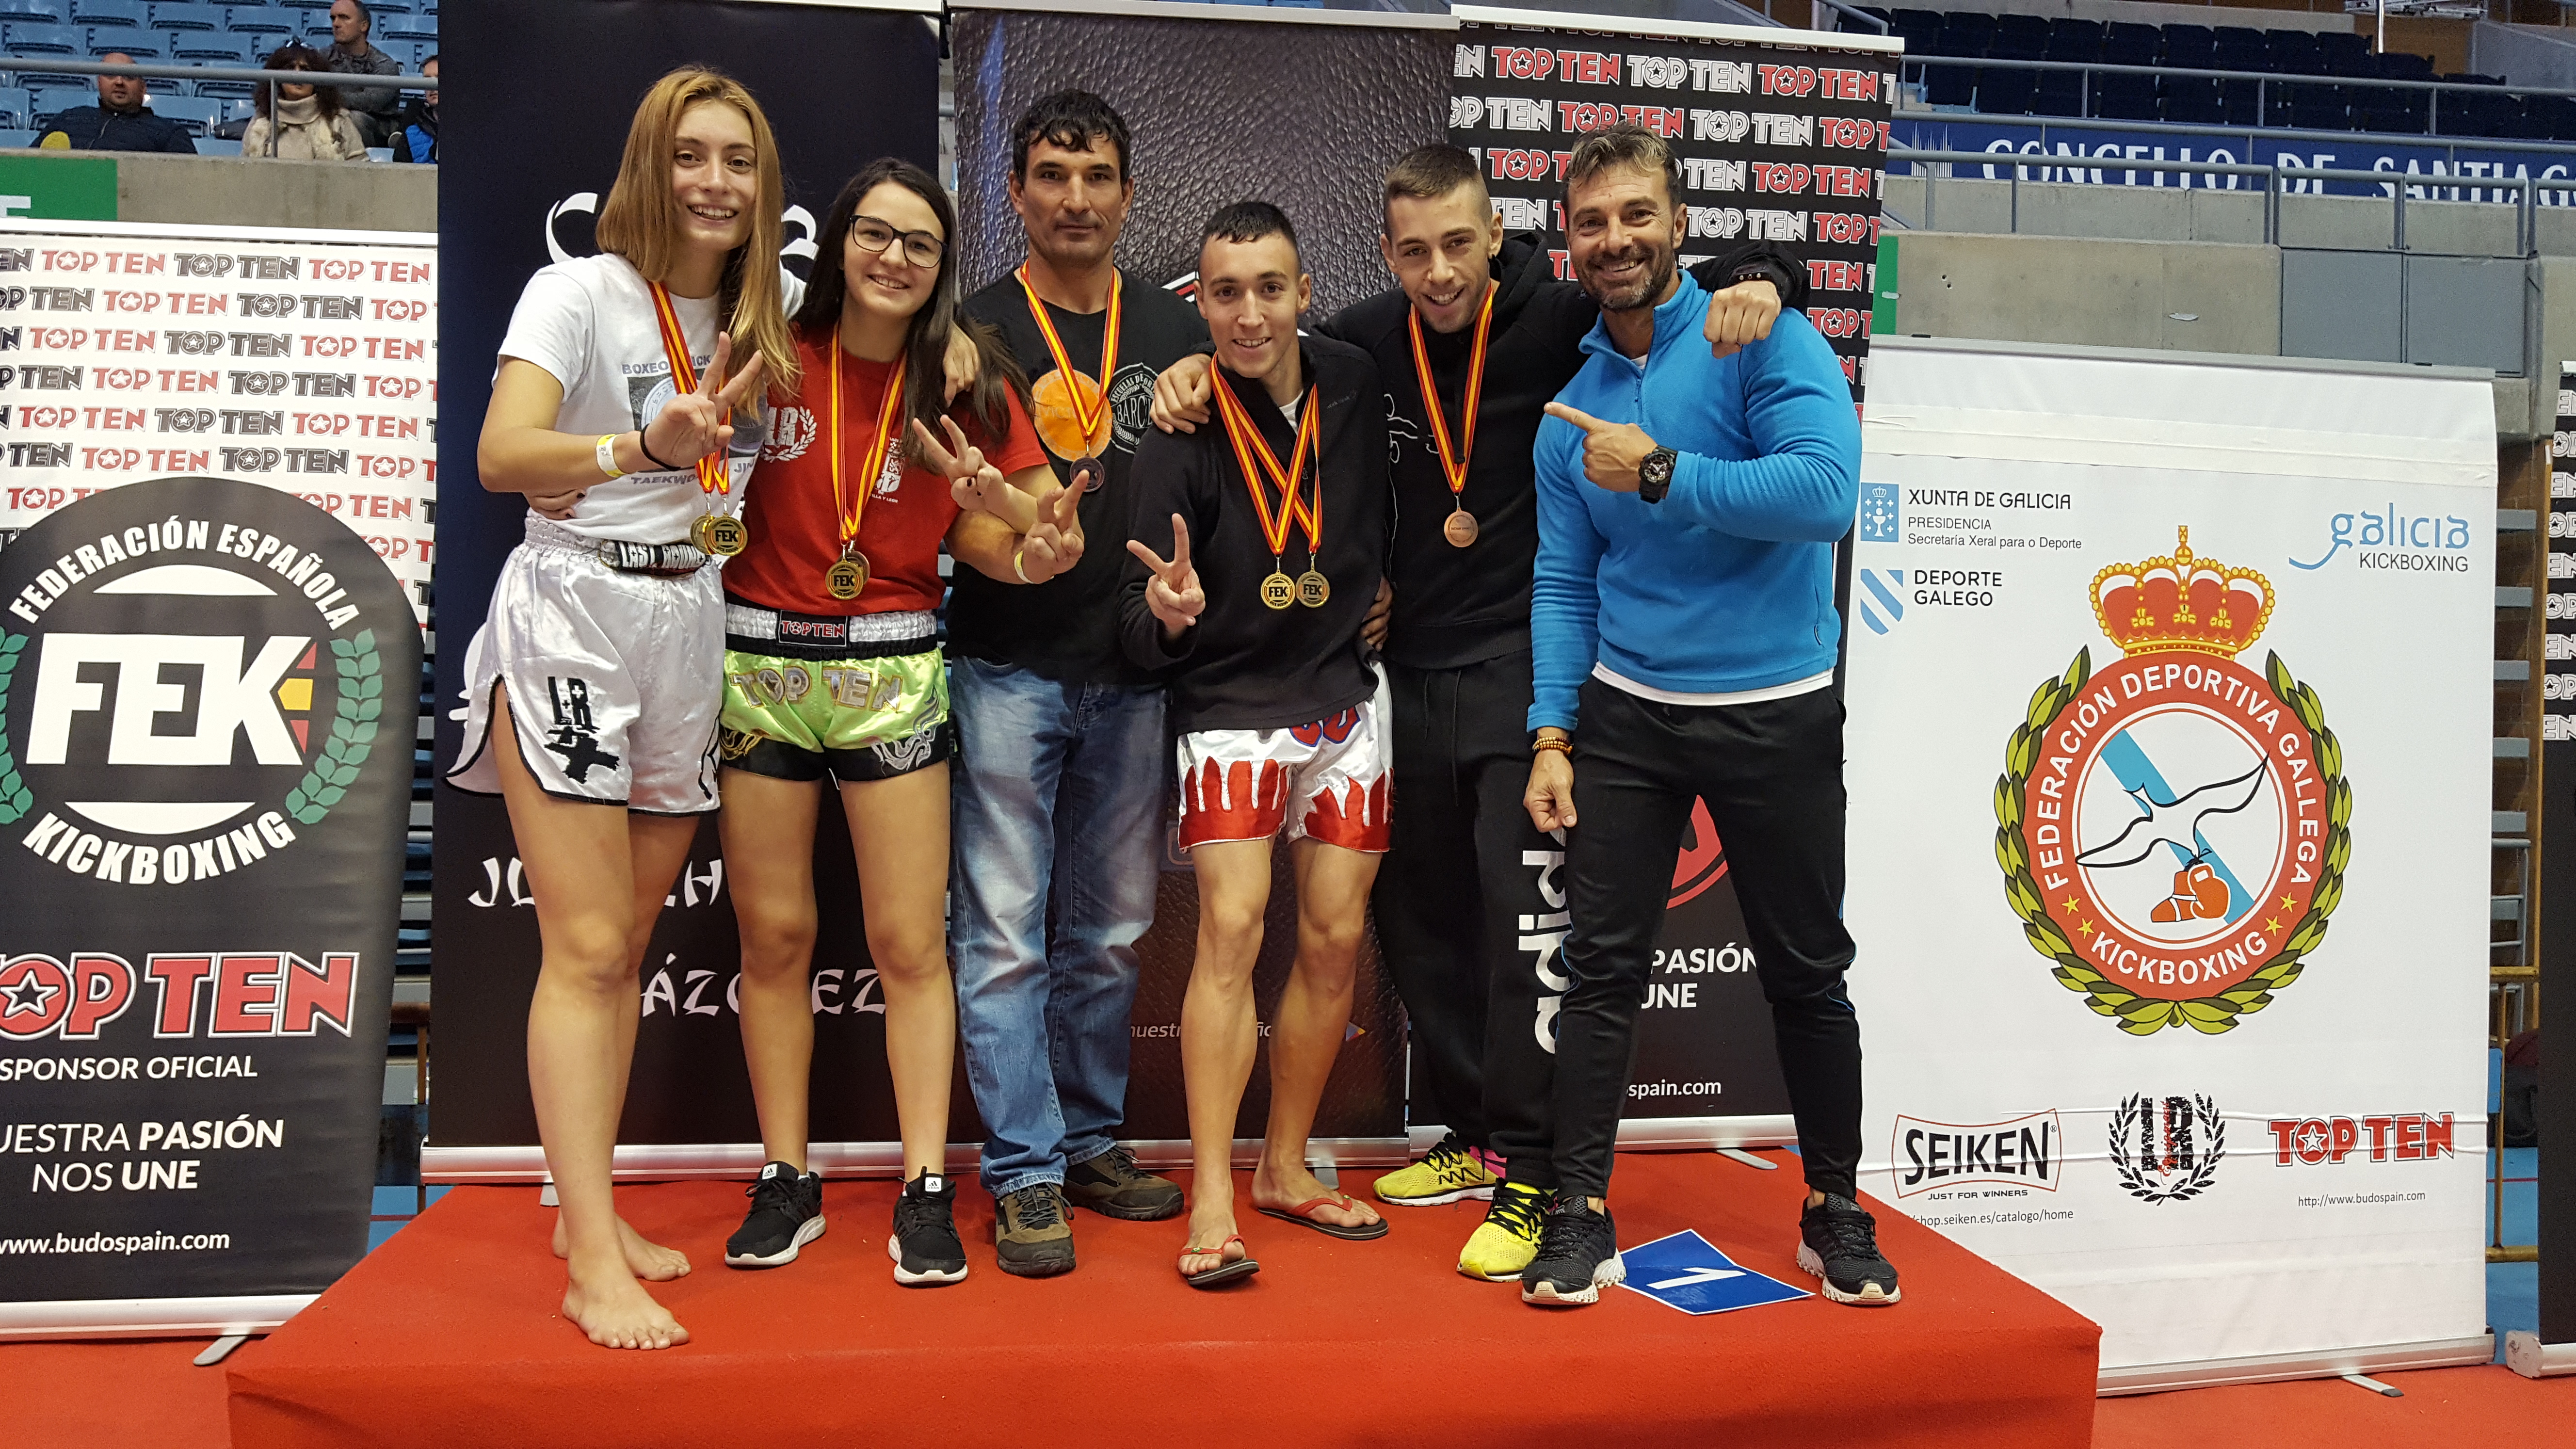 Kick Boxing: Tres deportistas segovianos y un entrenador reconocidos de “Alto Nivel” por la Junta de Castilla y León